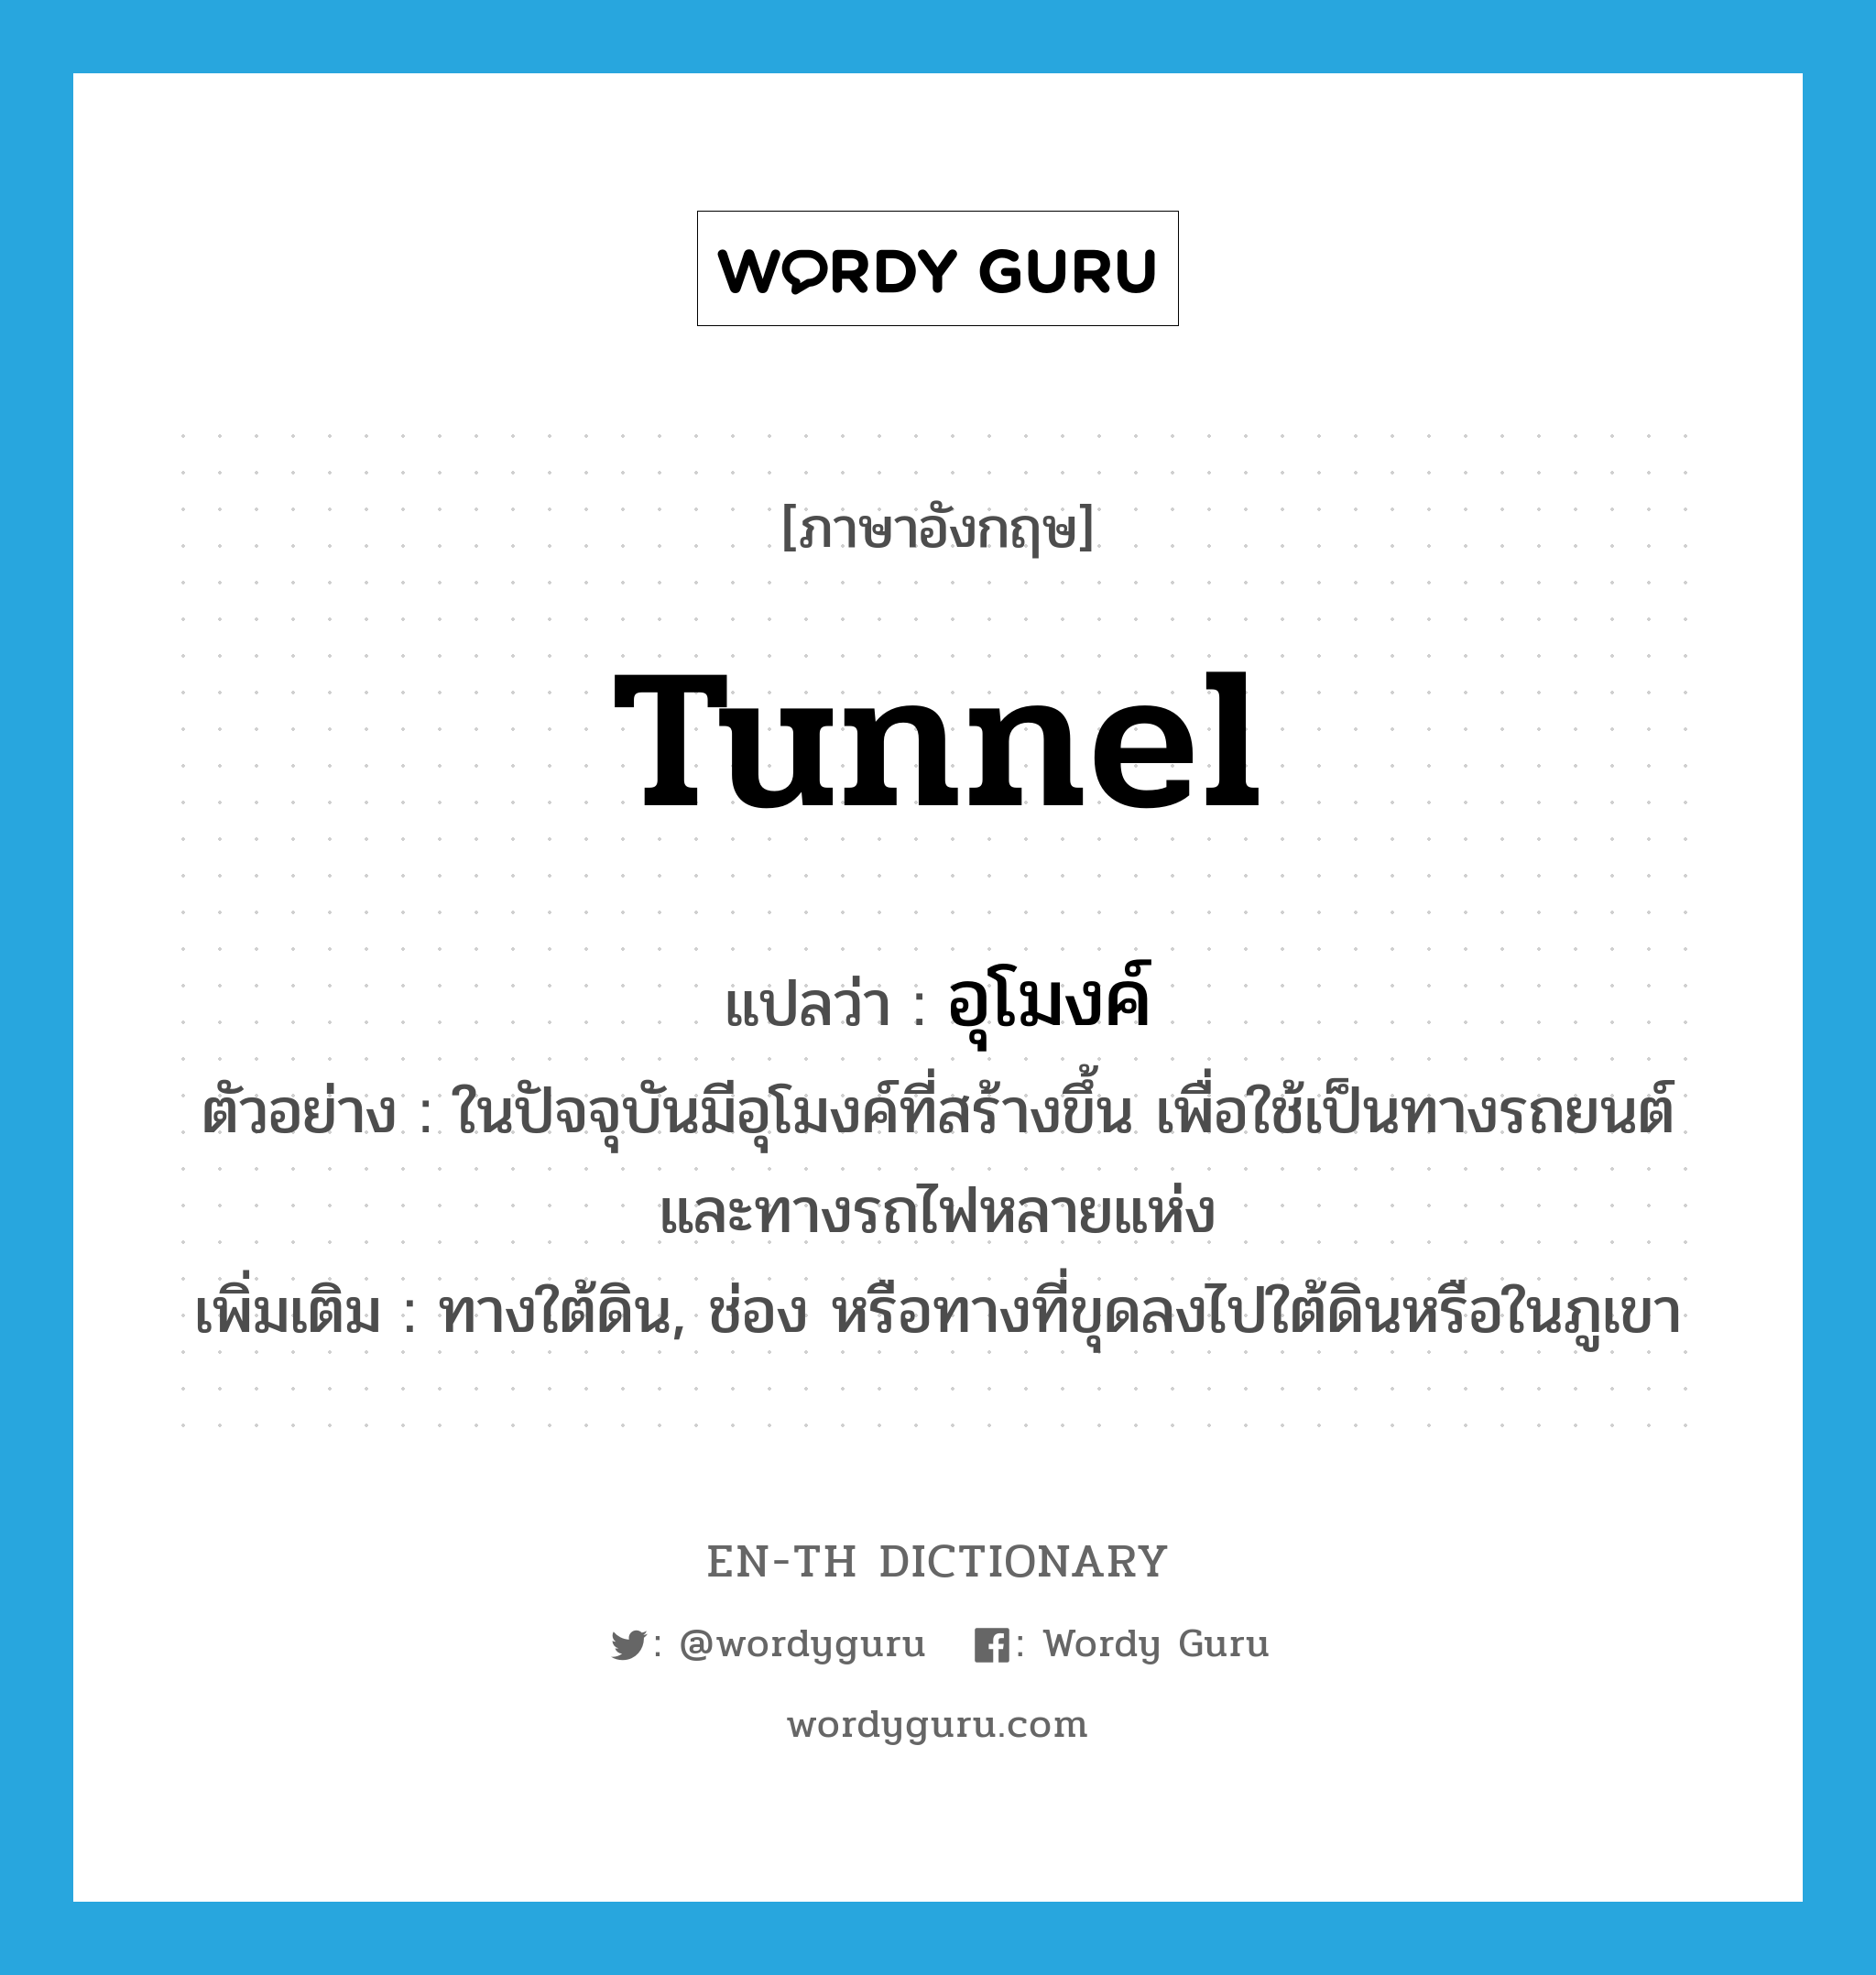 อุโมงค์ ภาษาอังกฤษ?, คำศัพท์ภาษาอังกฤษ อุโมงค์ แปลว่า tunnel ประเภท N ตัวอย่าง ในปัจจุบันมีอุโมงค์ที่สร้างขึ้น เพื่อใช้เป็นทางรถยนต์ และทางรถไฟหลายแห่ง เพิ่มเติม ทางใต้ดิน, ช่อง หรือทางที่ขุดลงไปใต้ดินหรือในภูเขา หมวด N